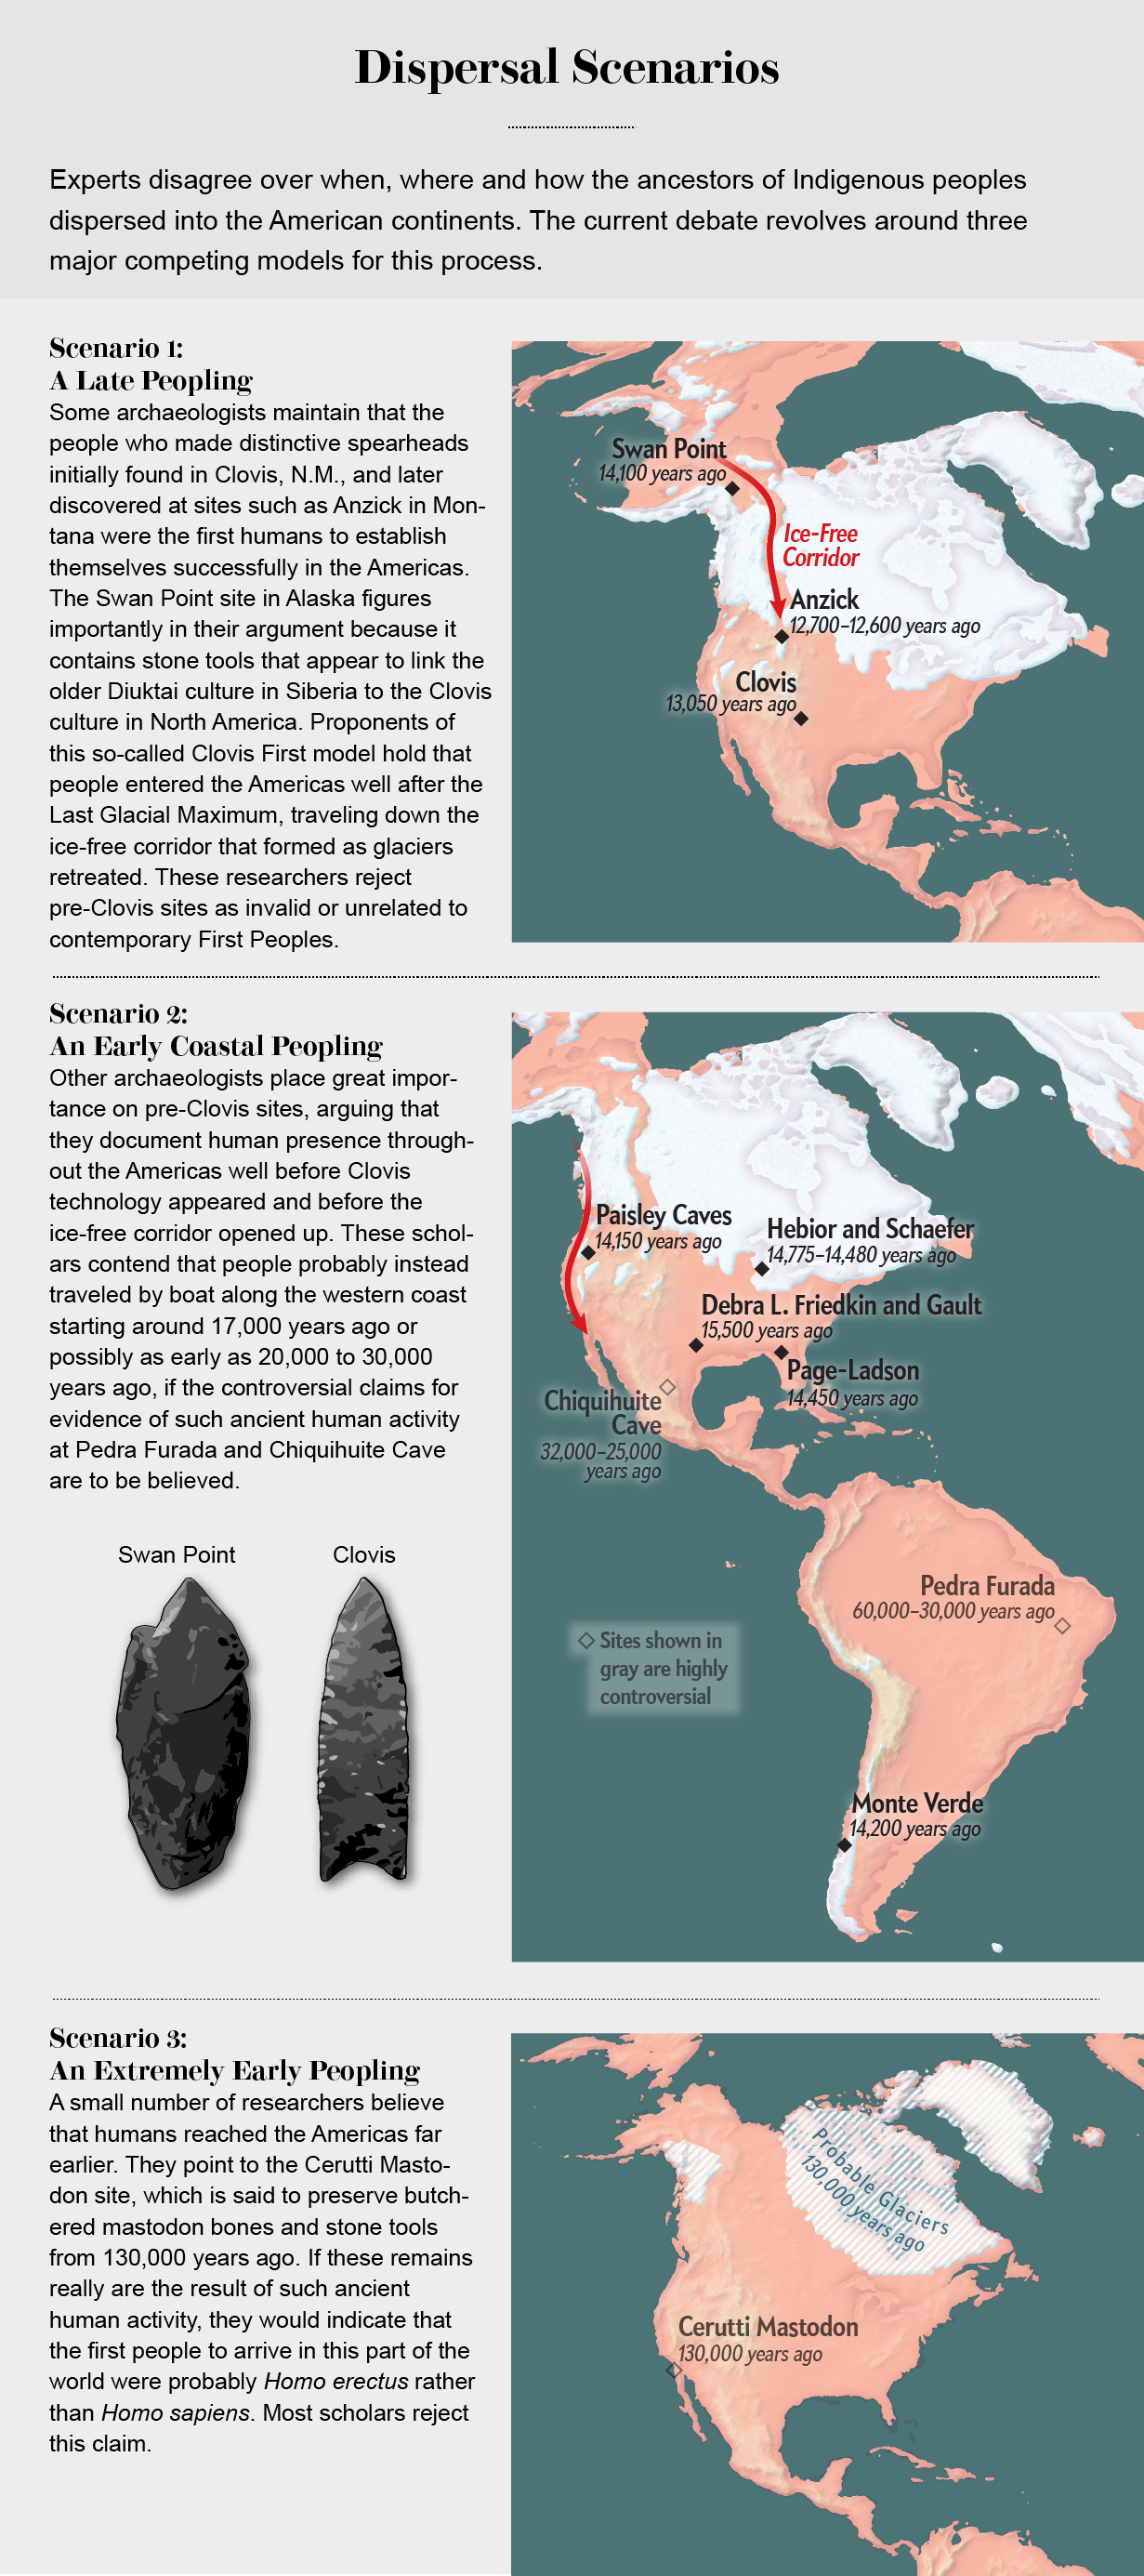 地图显示了三个方案的土着人民如何分散到美国大陆。